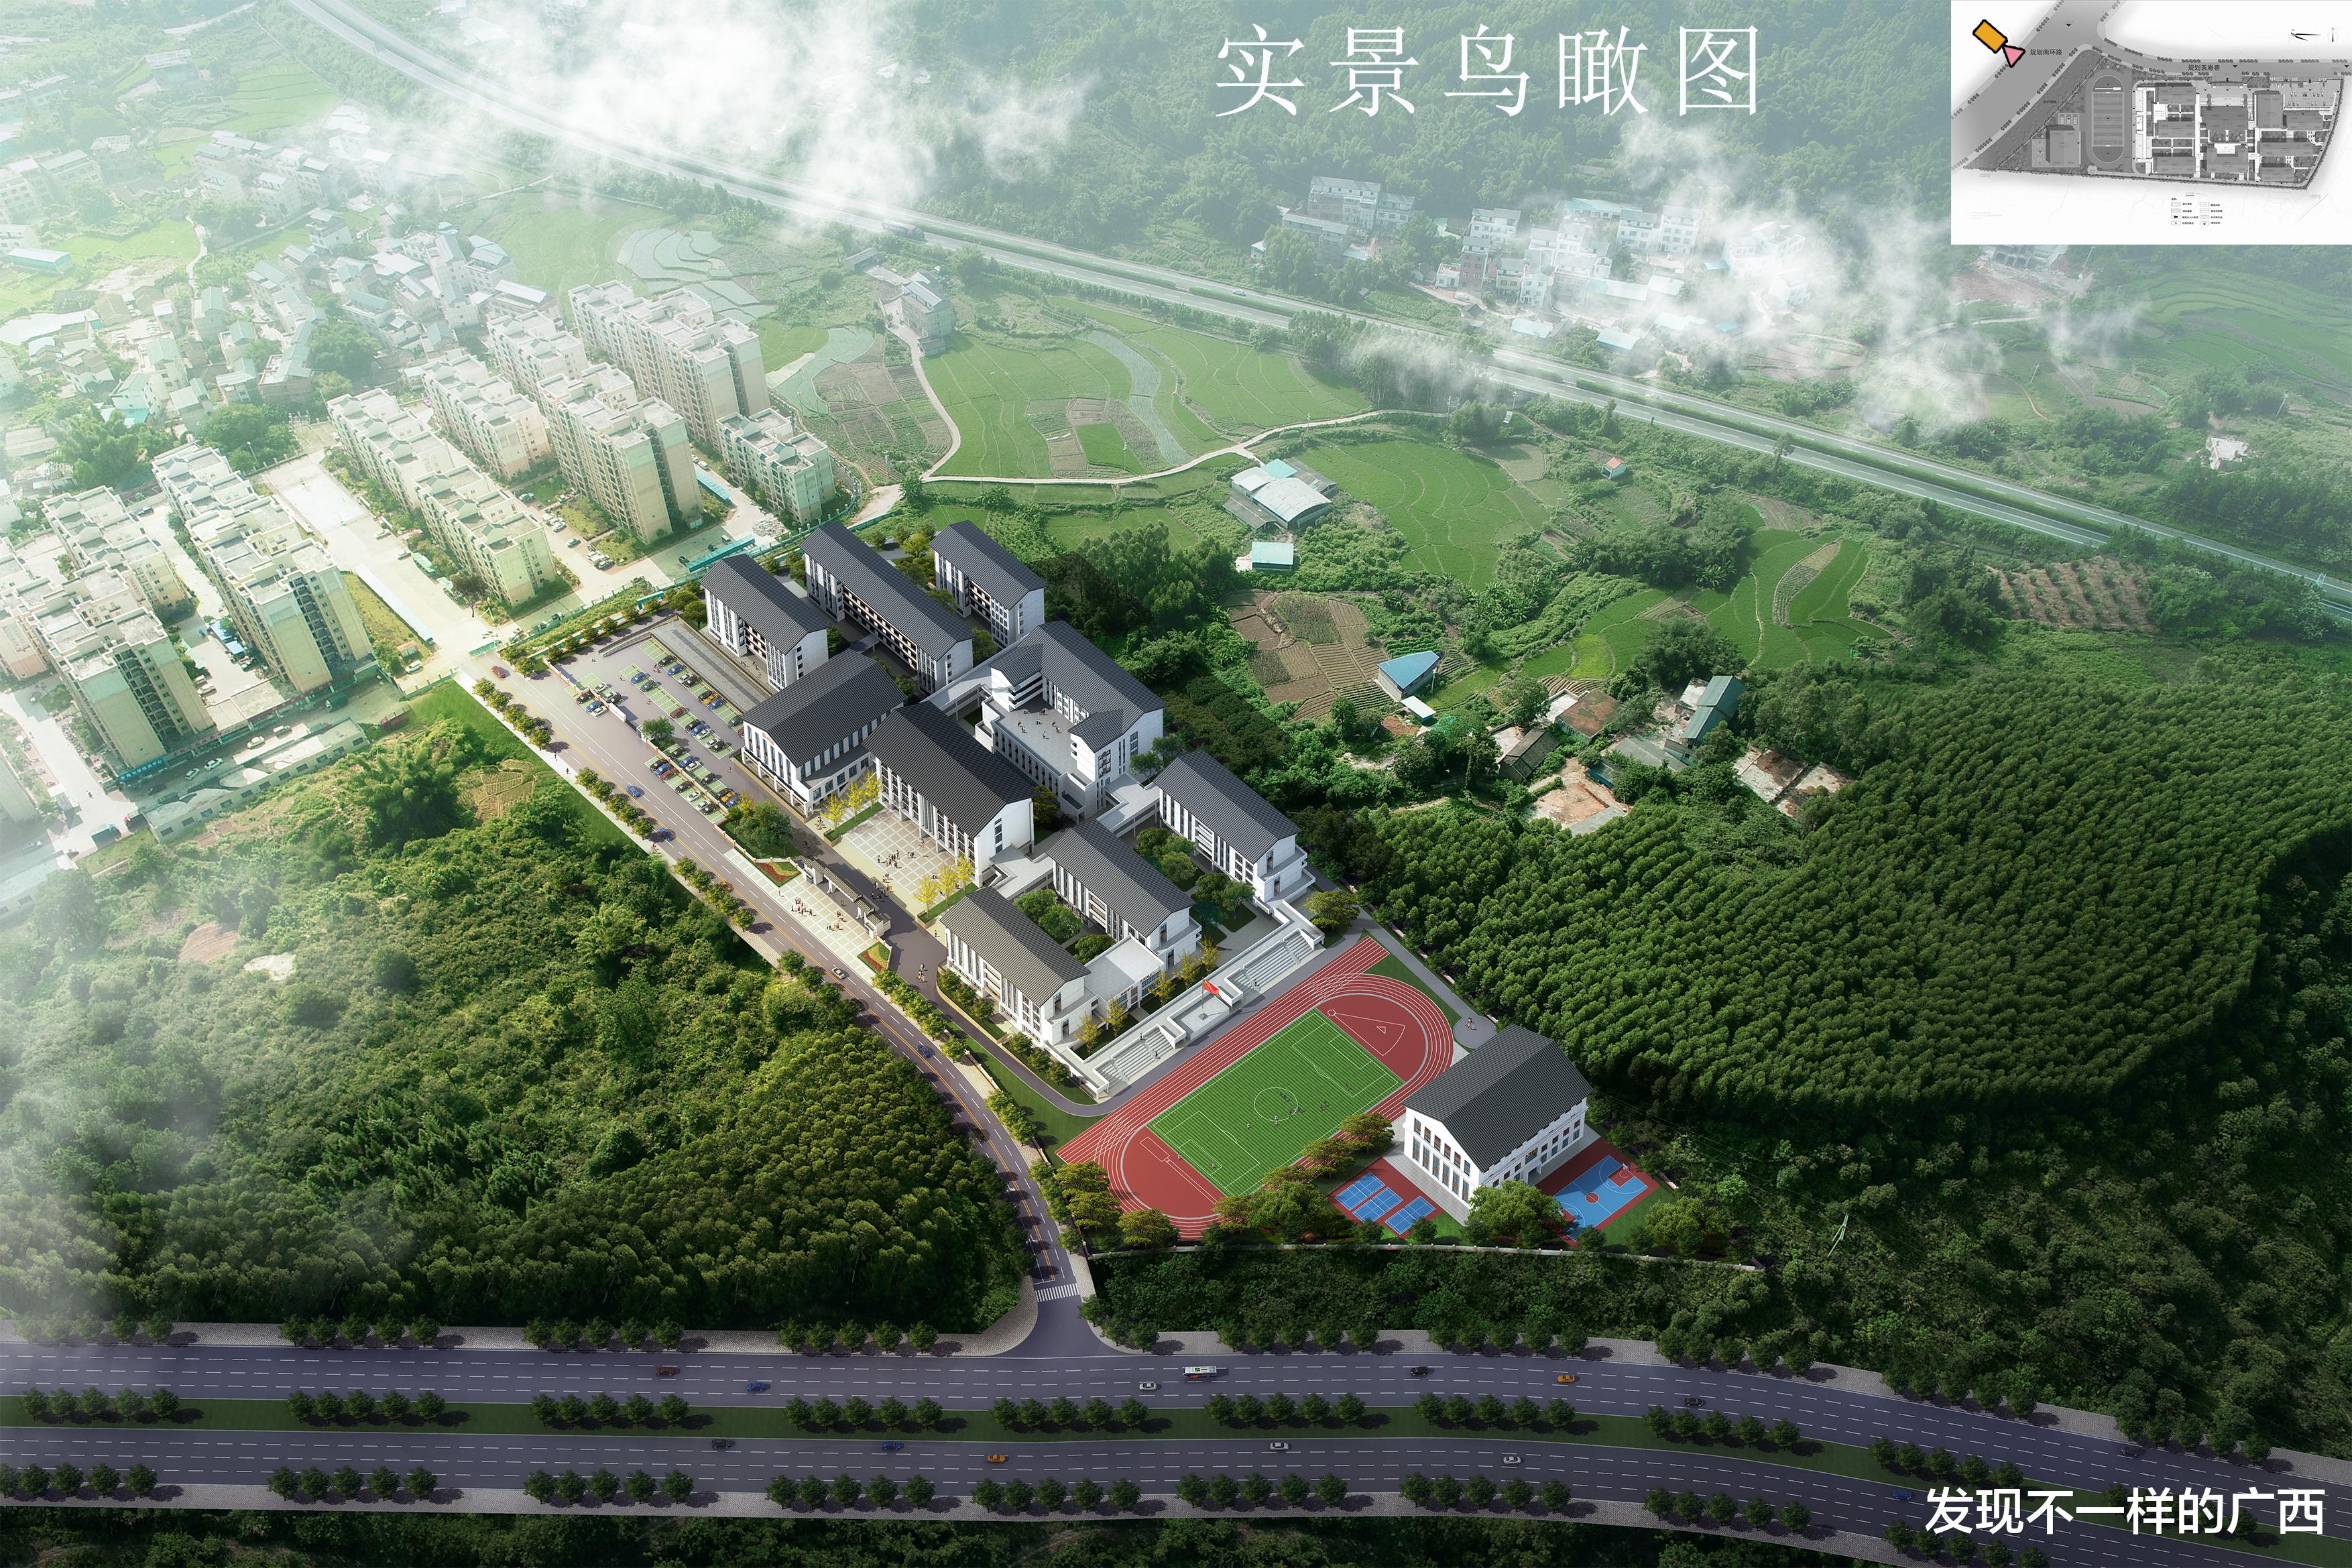 靓! 贺州市在这里建设一所中学, 投资1.56亿元